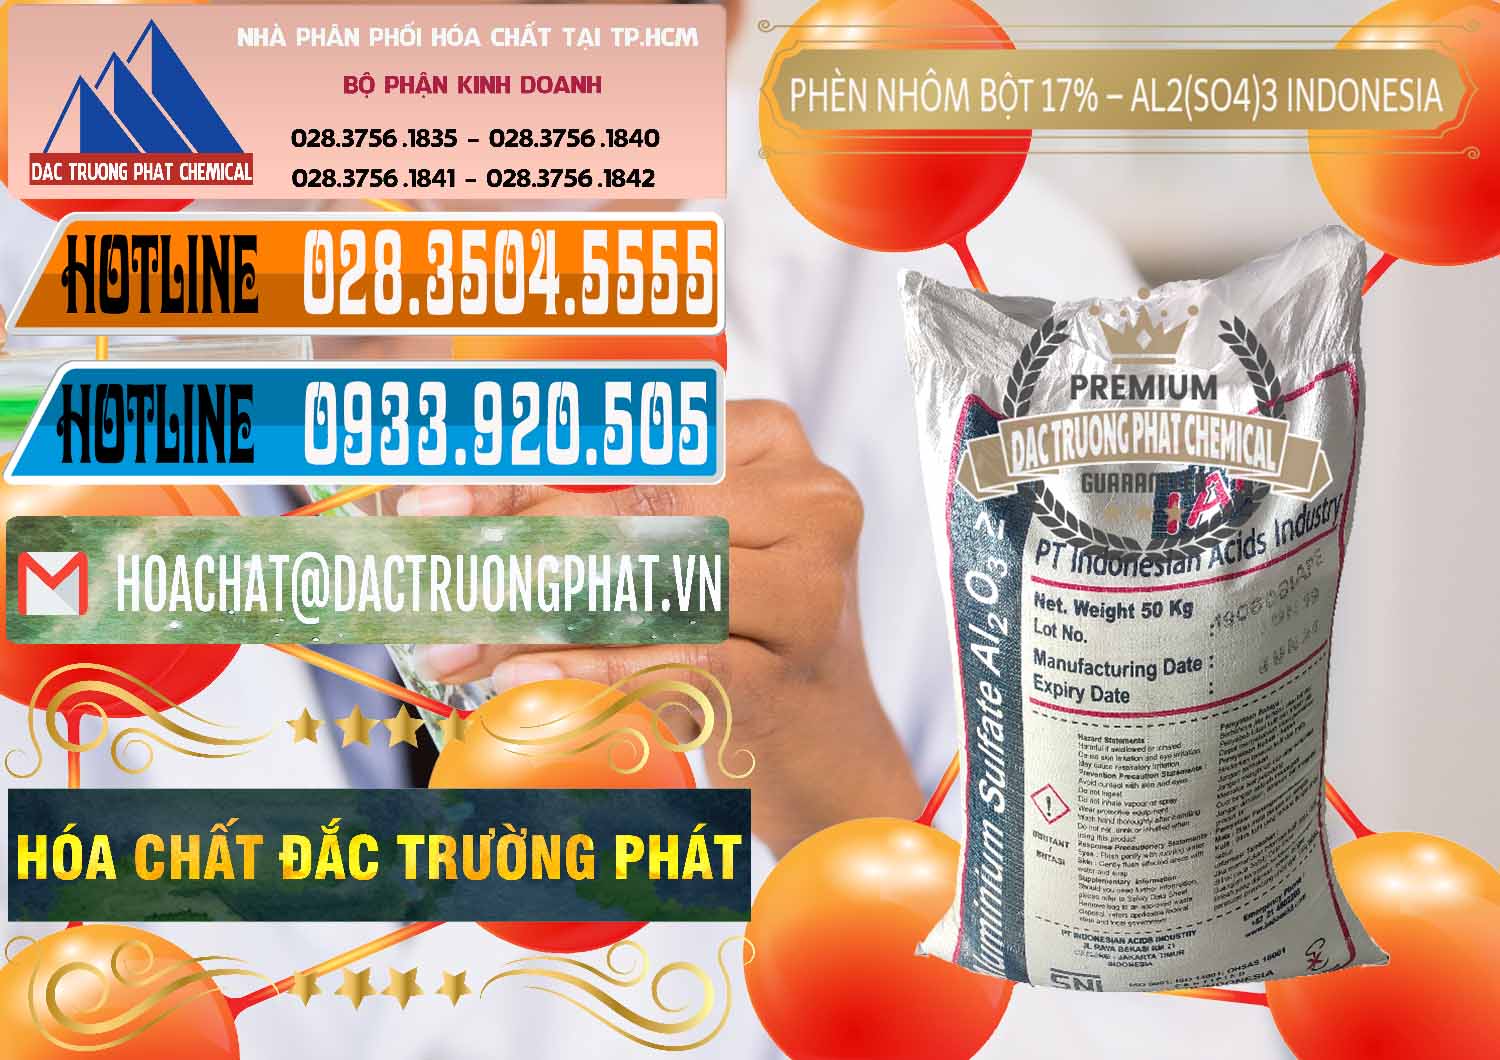 Công ty chuyên kinh doanh _ bán Phèn Nhôm Bột - Al2(SO4)3 17% bao 50kg Indonesia - 0112 - Nơi phân phối _ kinh doanh hóa chất tại TP.HCM - stmp.net